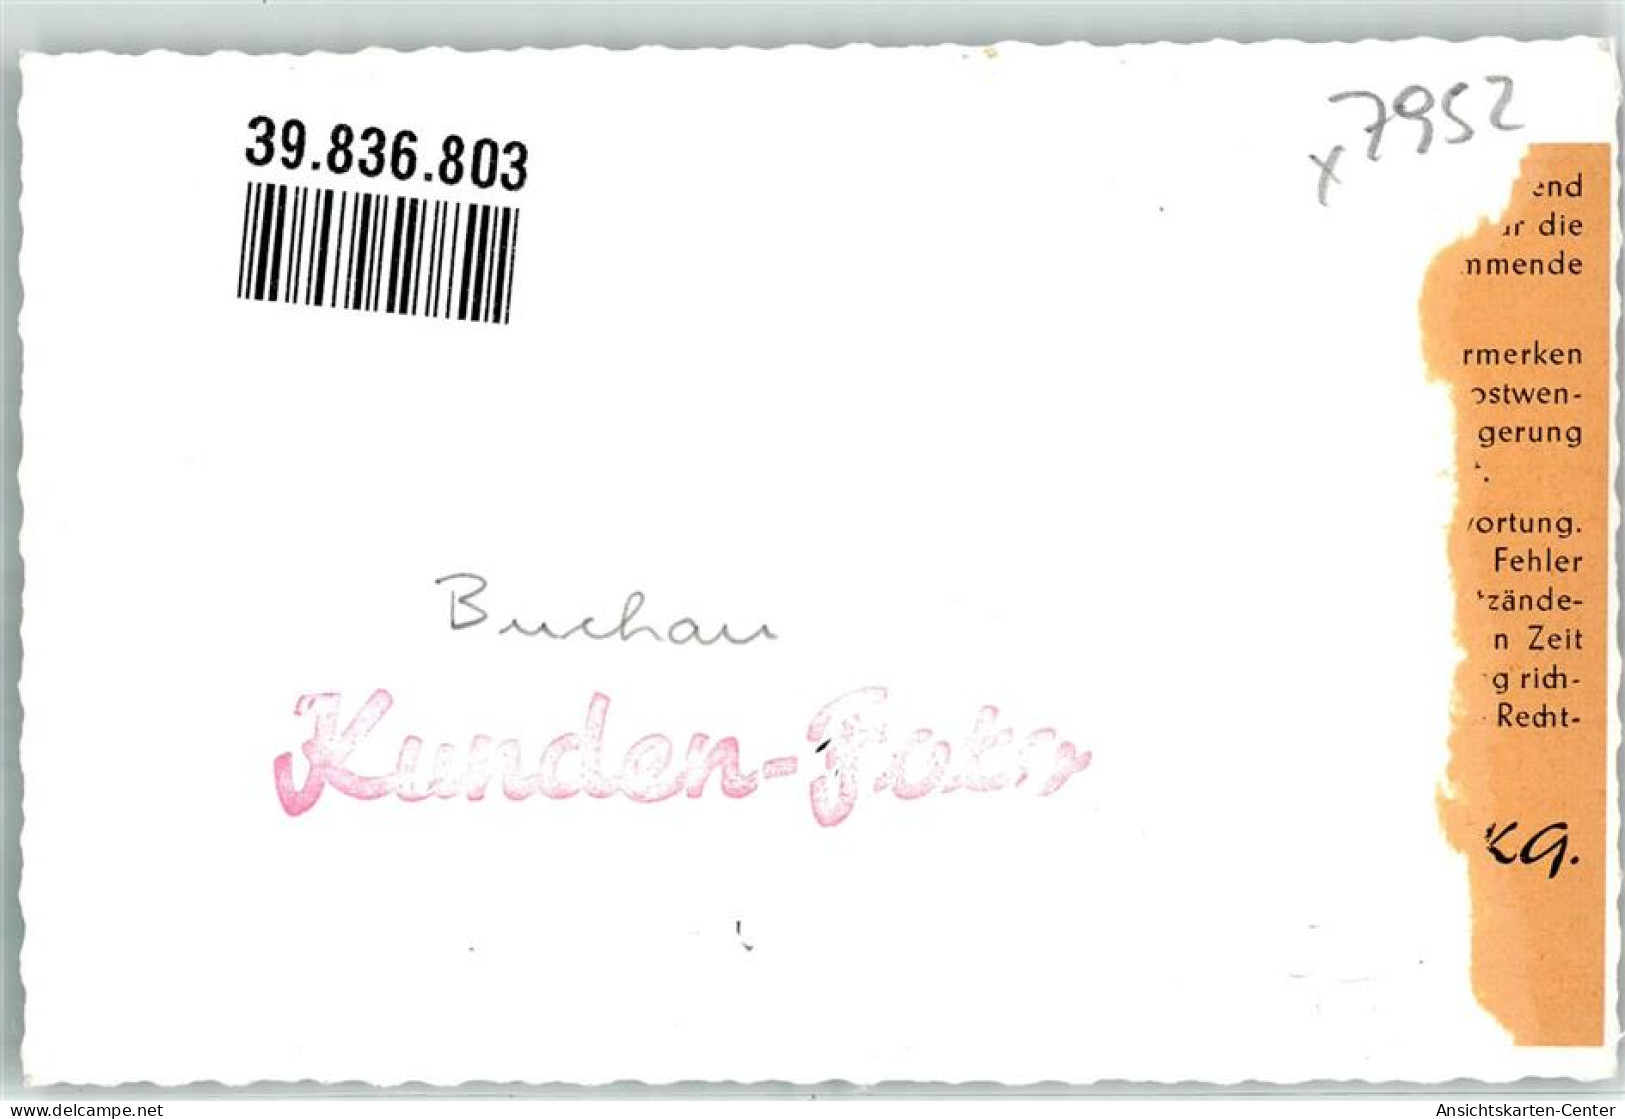 39836803 - Bad Buchau - Bad Buchau